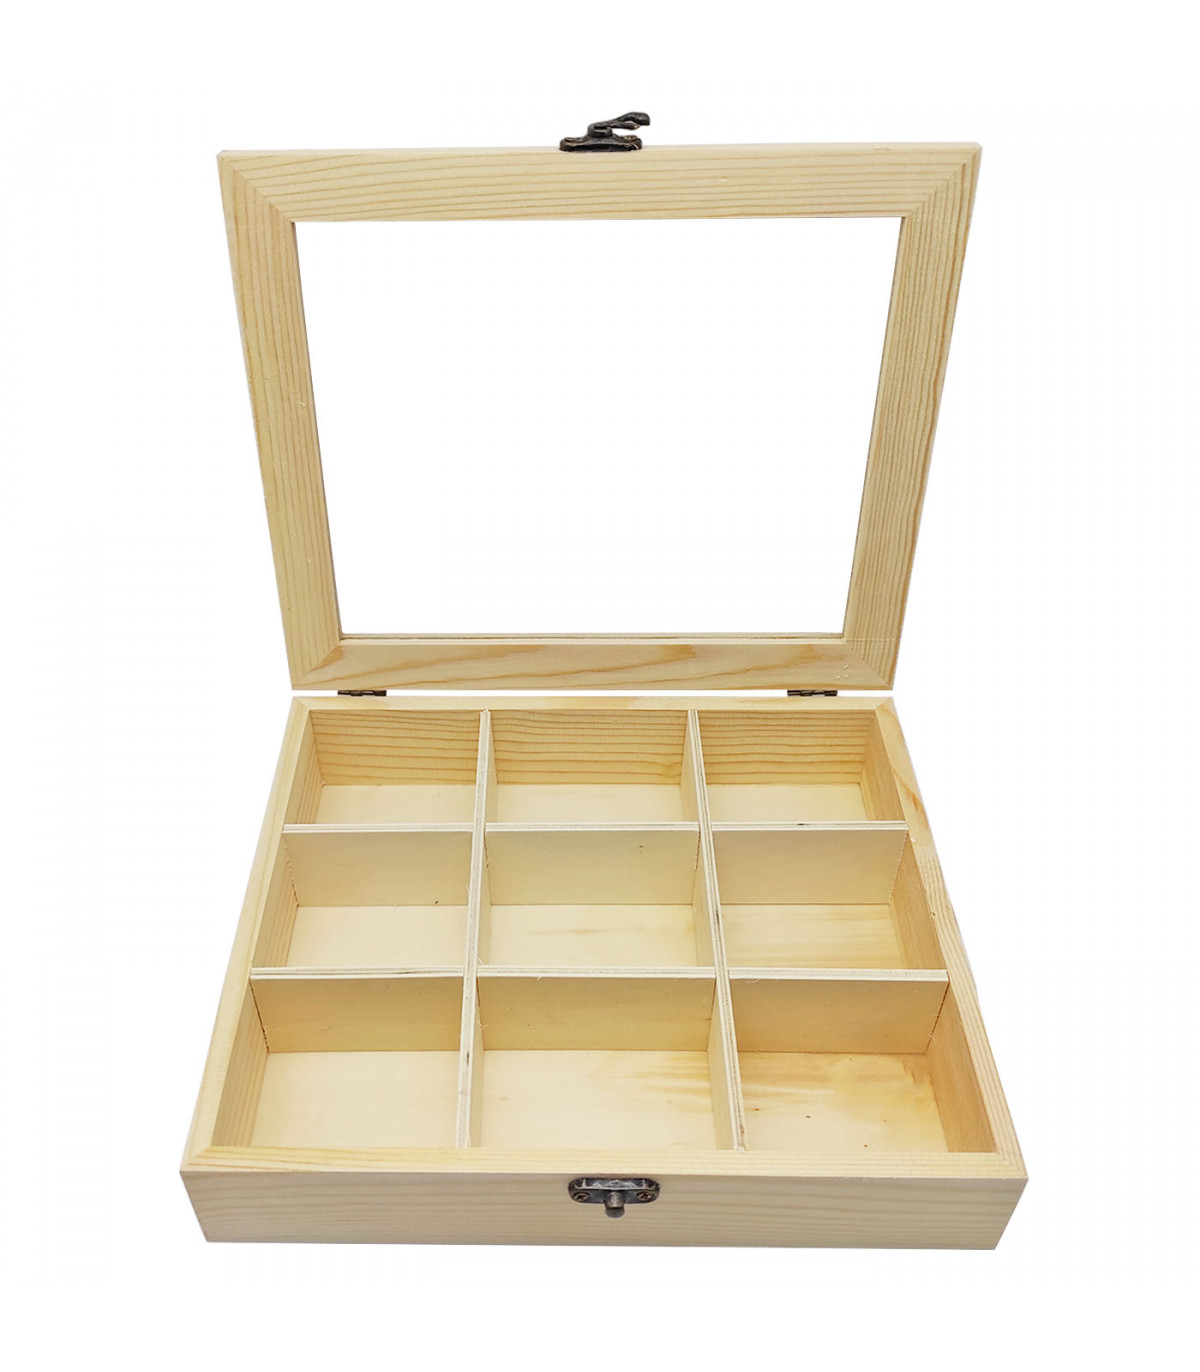 Caja de madera con 9 compartimentos y tapa con cristal, expositor